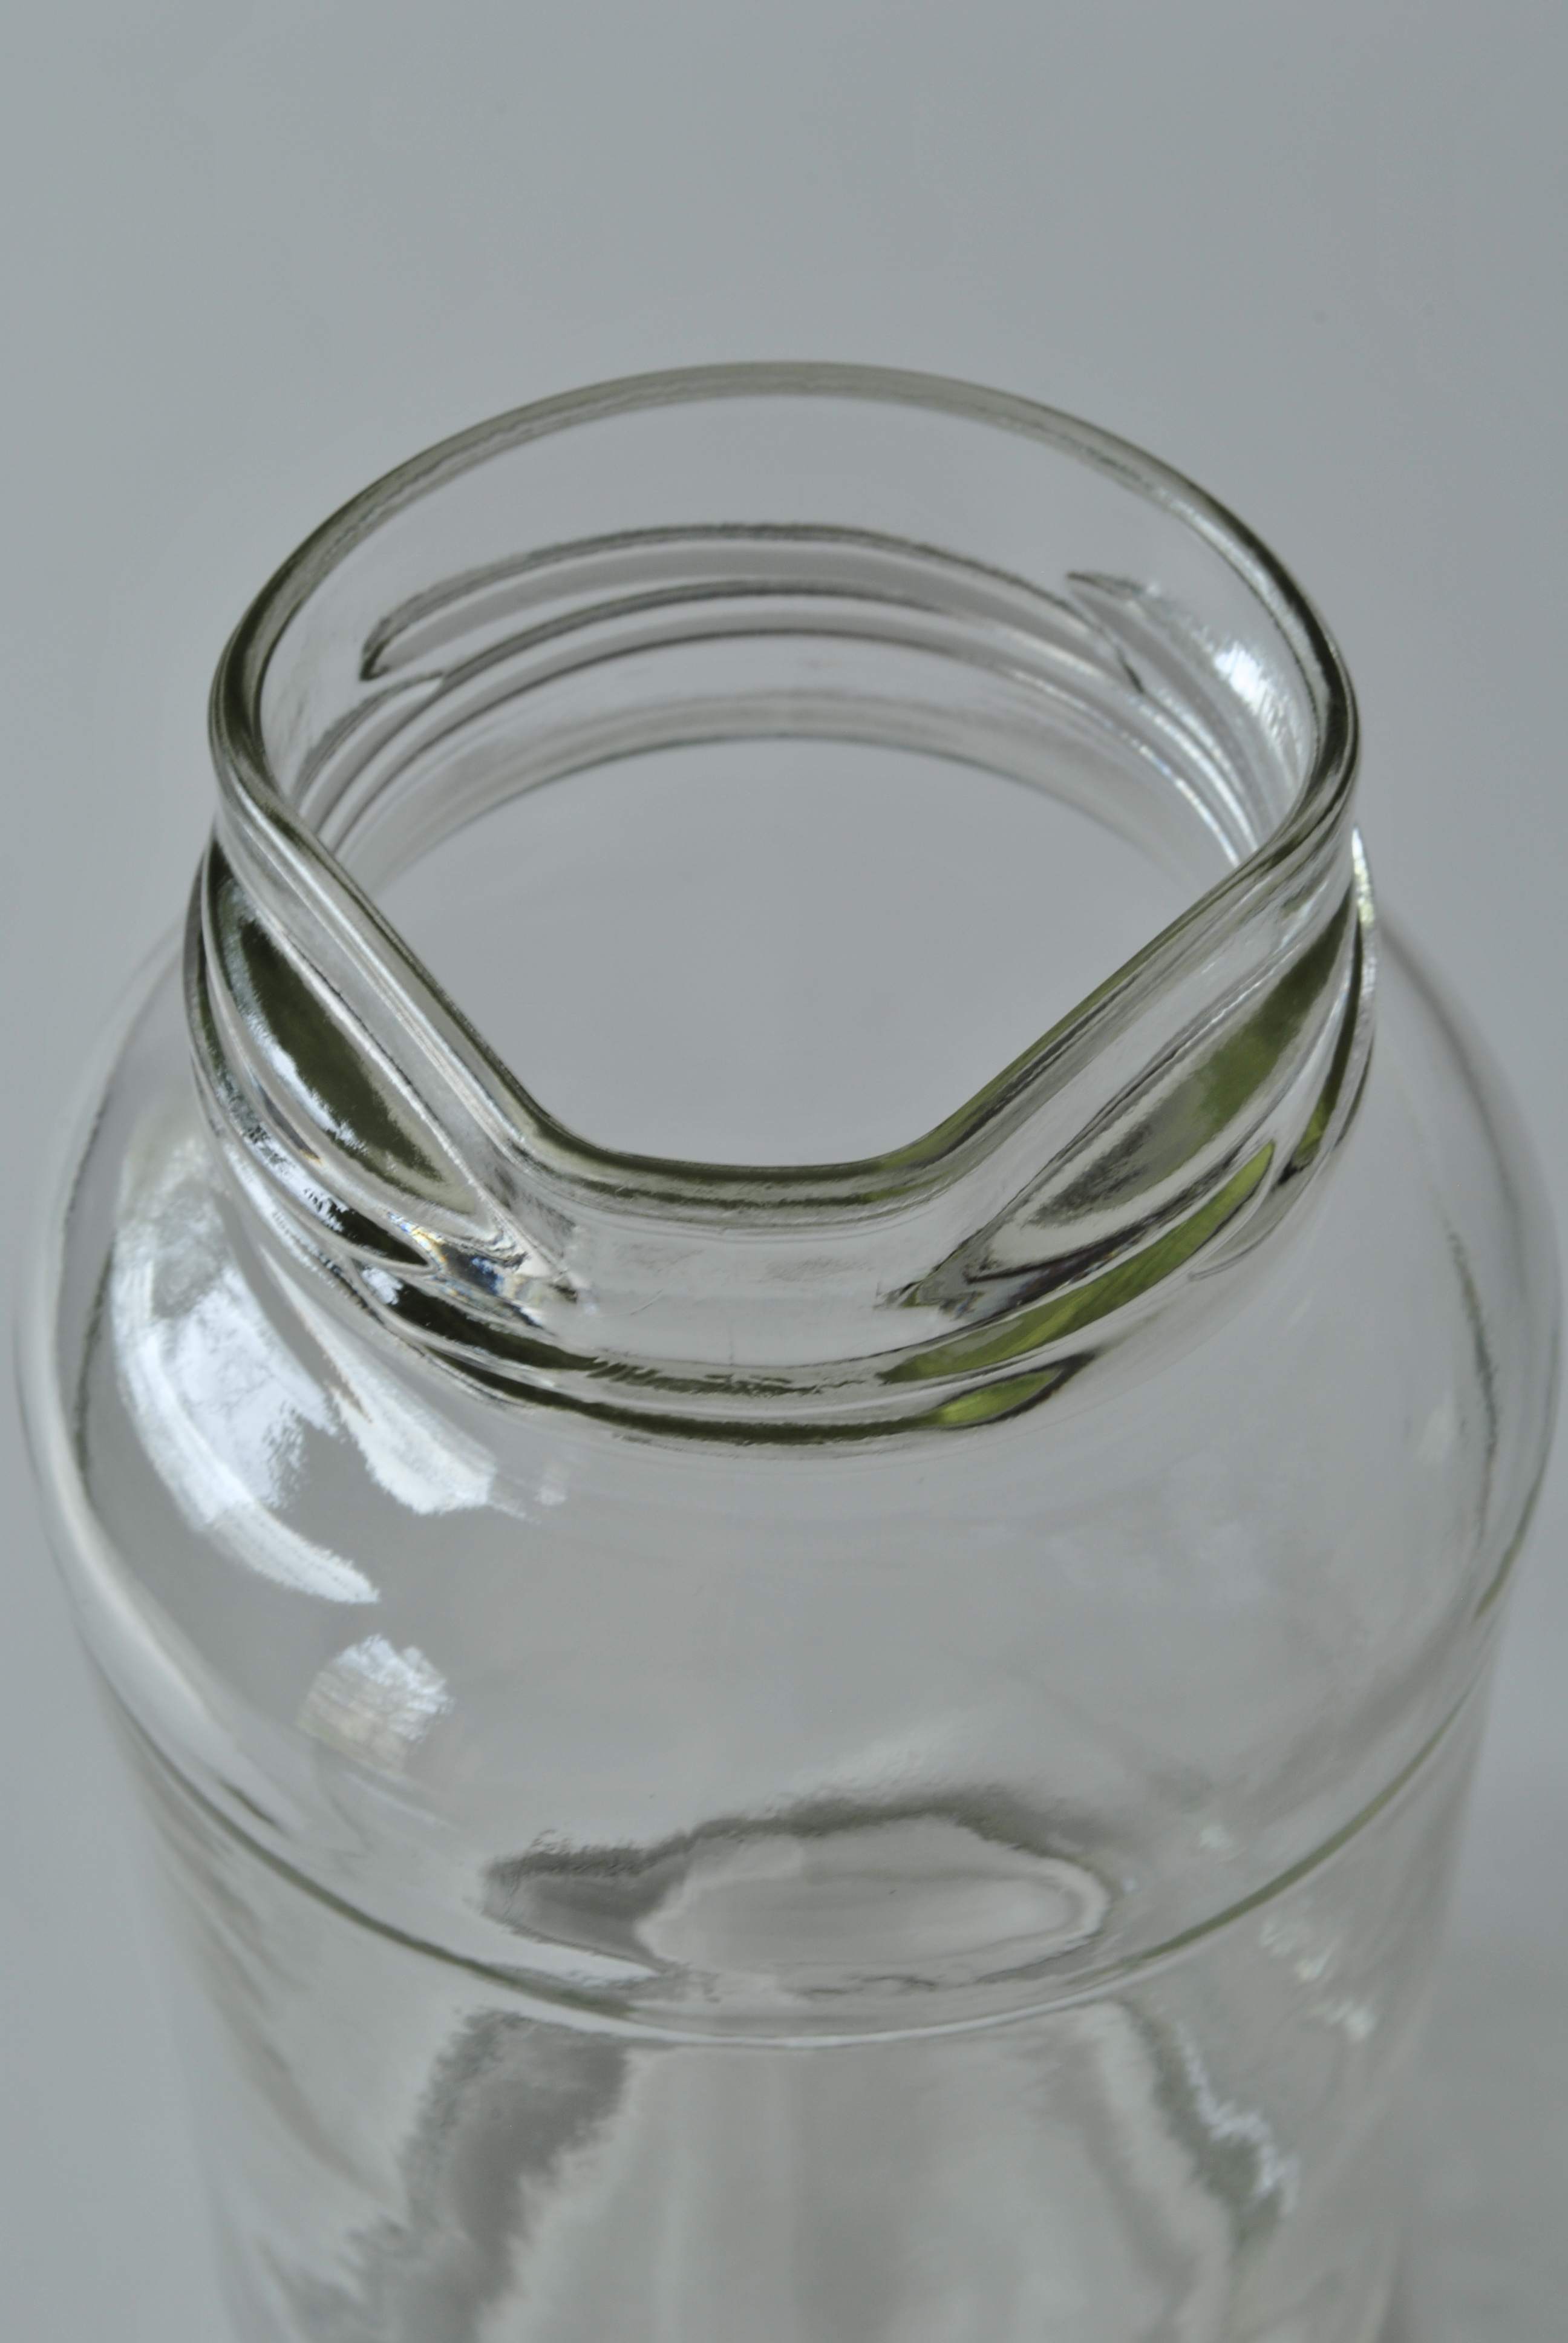 O-I unveils jar with 'unique' pouring spout